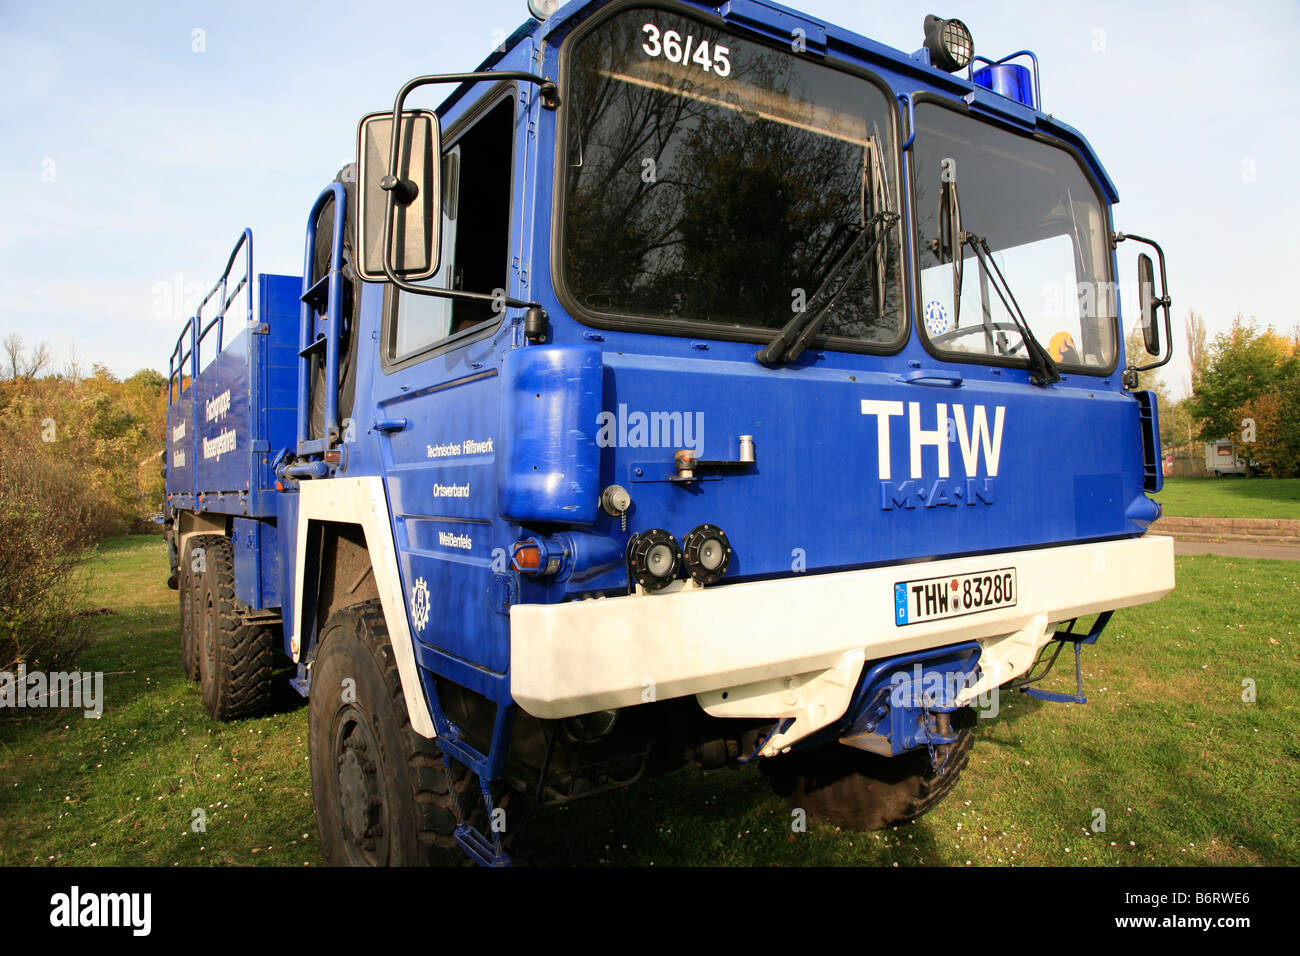 lorry of technical help Germany; THW, Technisches Hilfswerk Deutschland; LKW Stock Photo